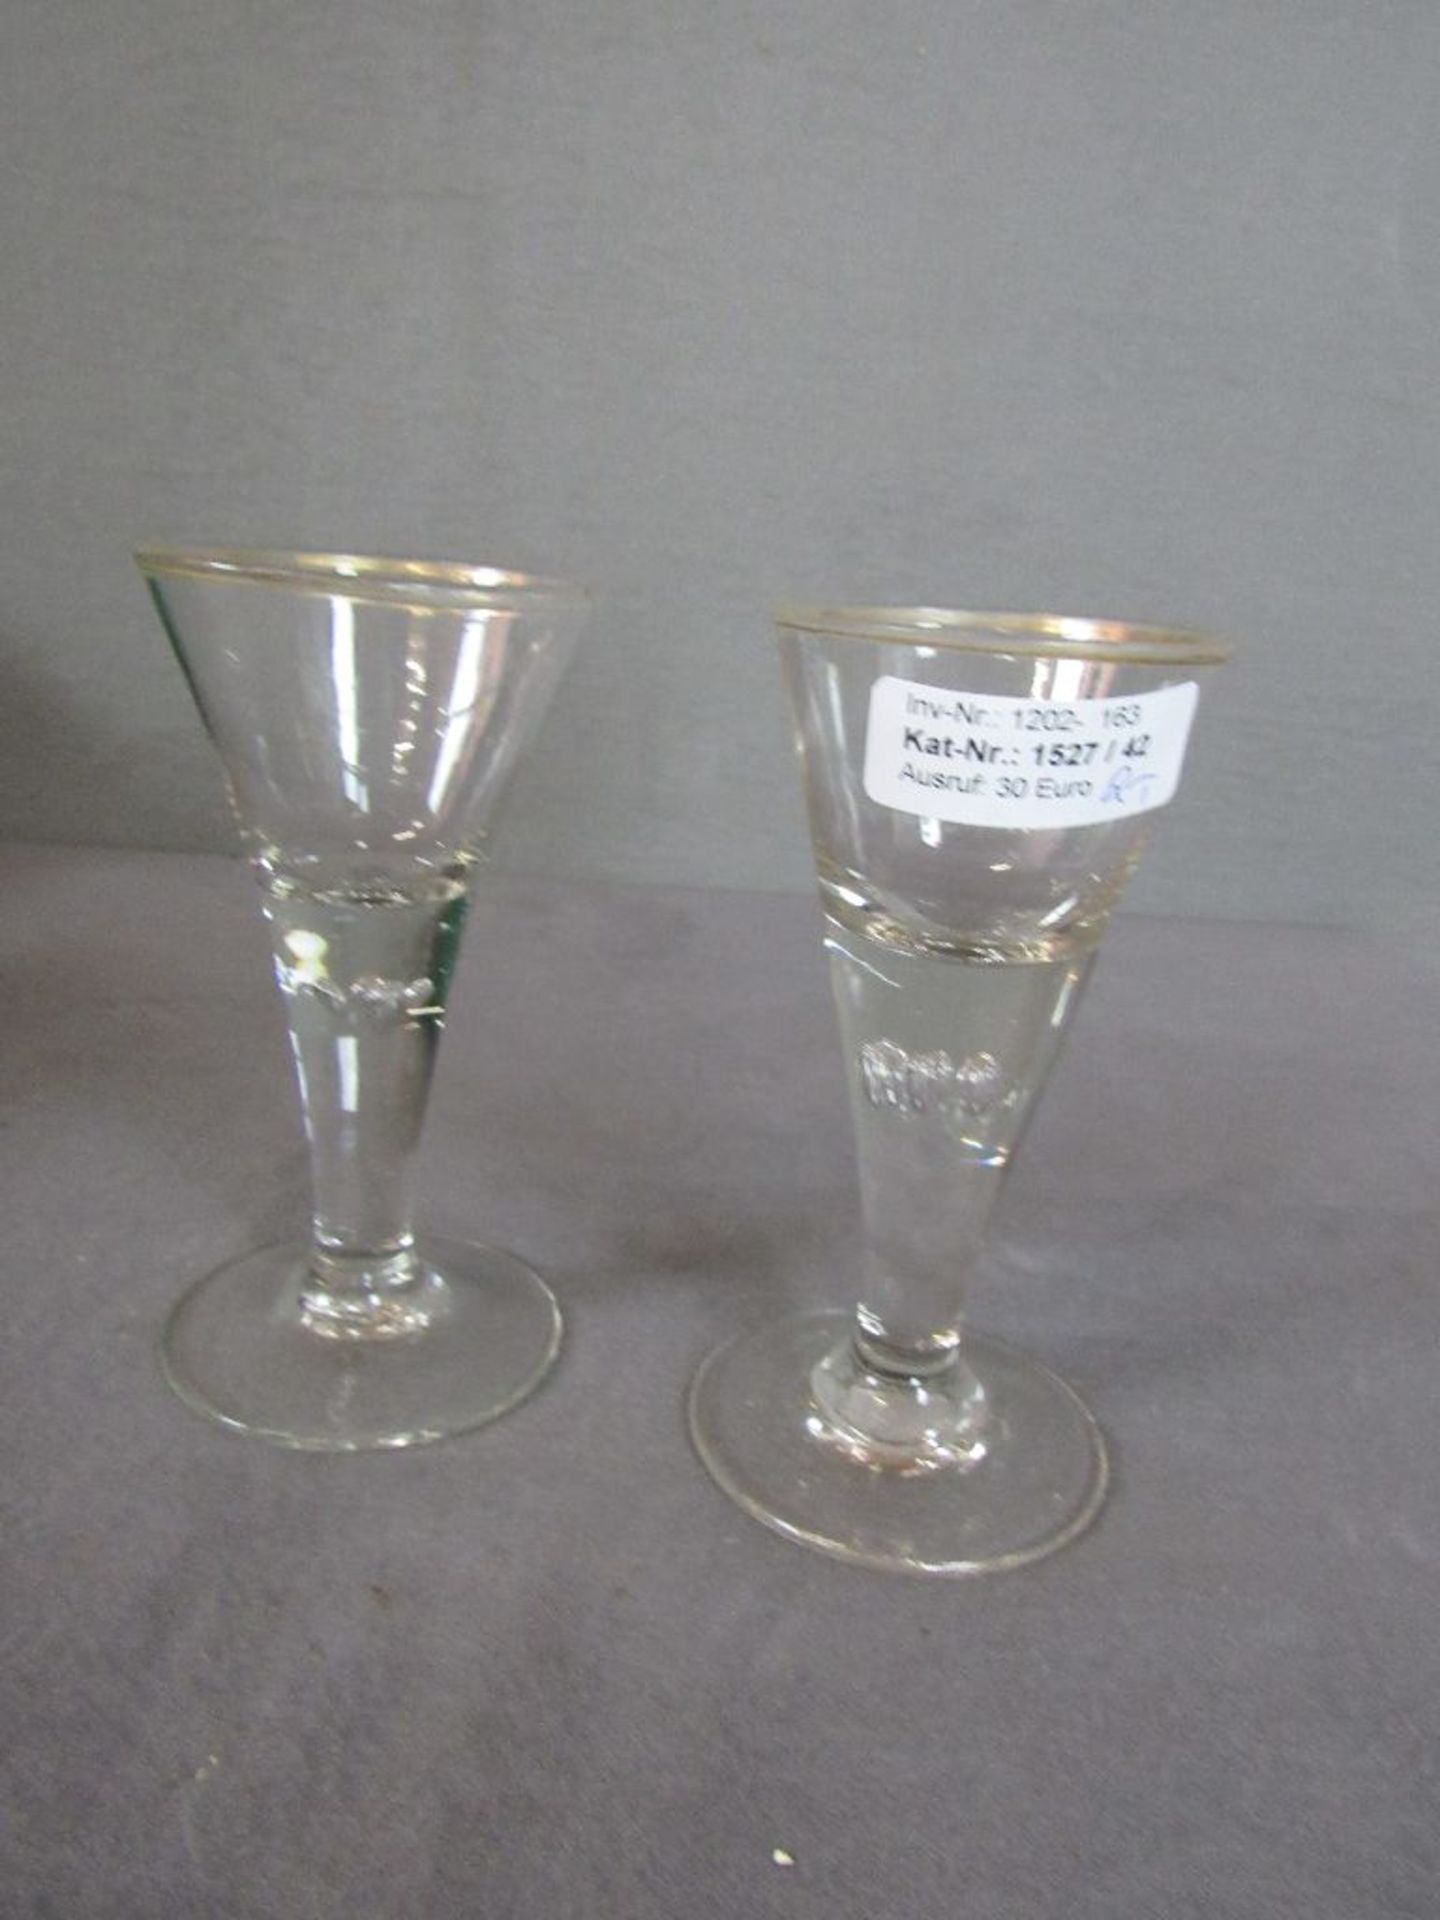 Zwei antike Gläser Lufteinschlüße 15cm hoch- - -20.00 % buyer's premium on the hammer price19.00 %